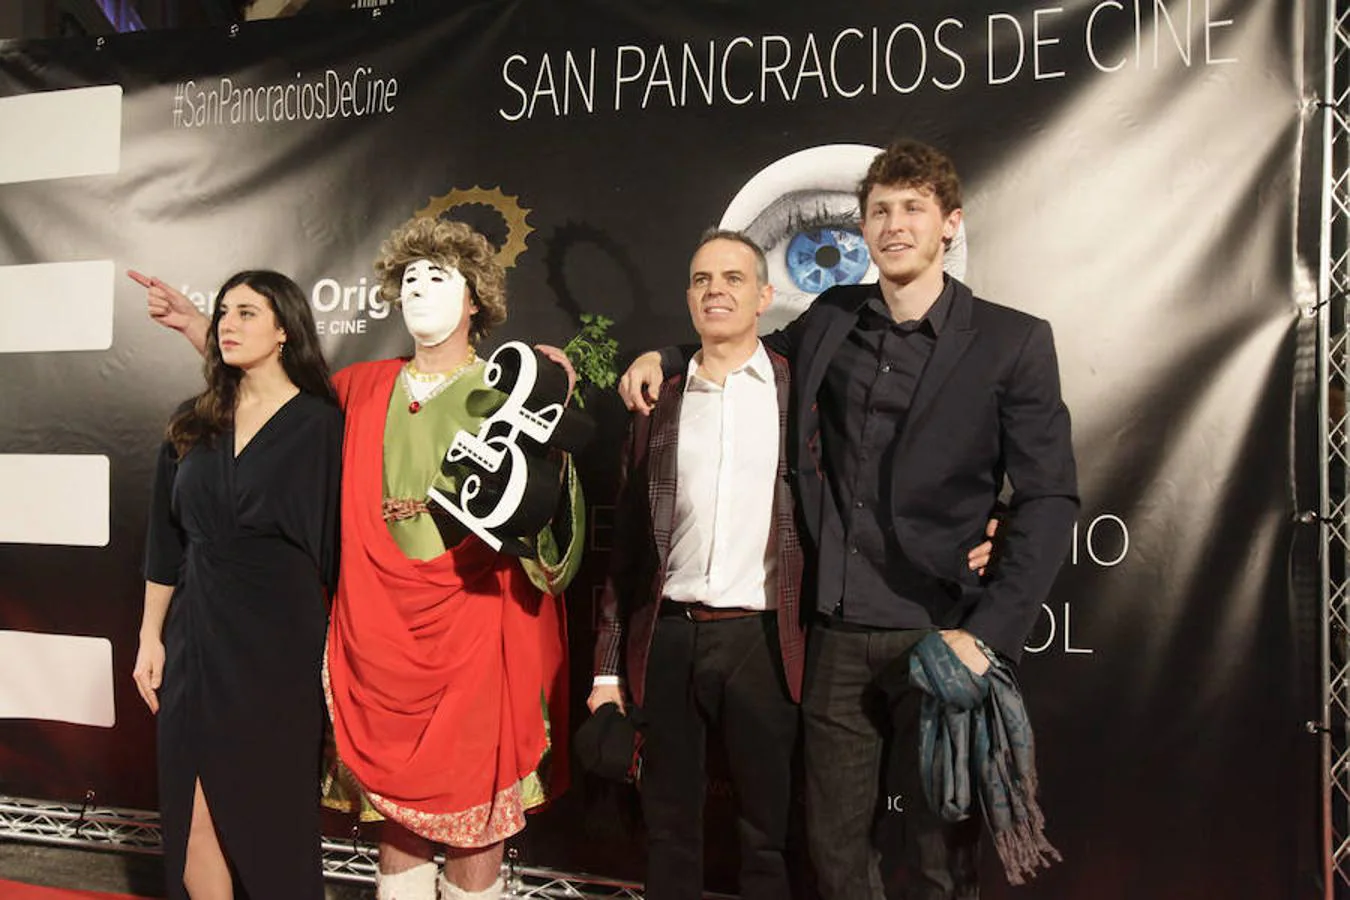 «Potencia el cine español y es solidario. Tendría que haber más festivales como este en España», afirmó el director